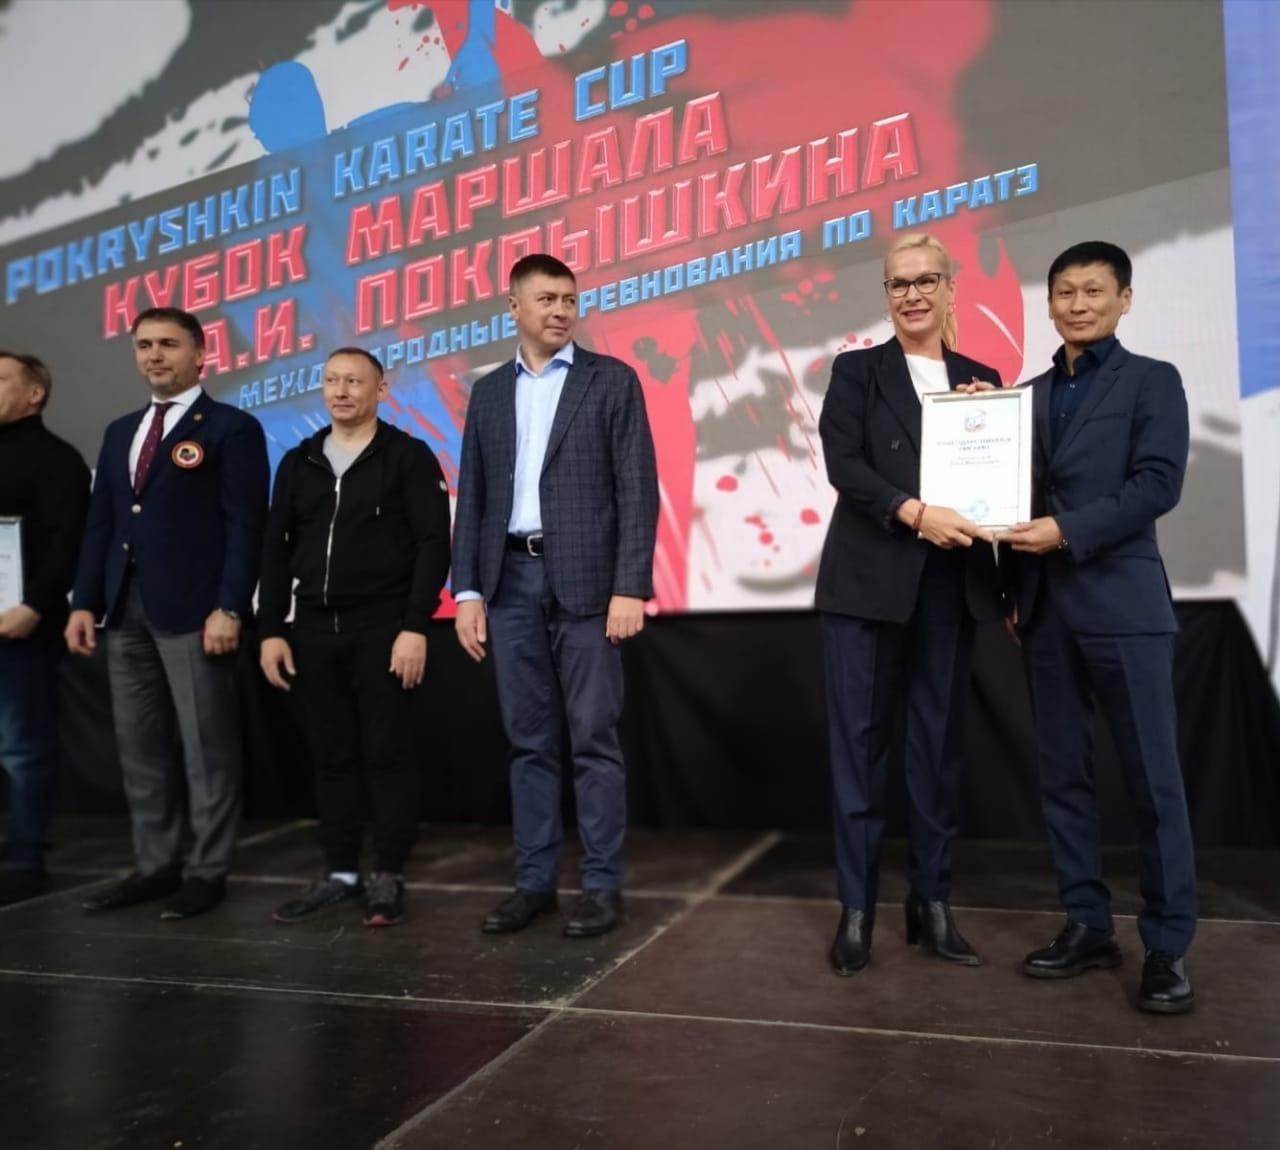 Фото Международные соревнования по карате открылись в Новосибирске 1 октября 3